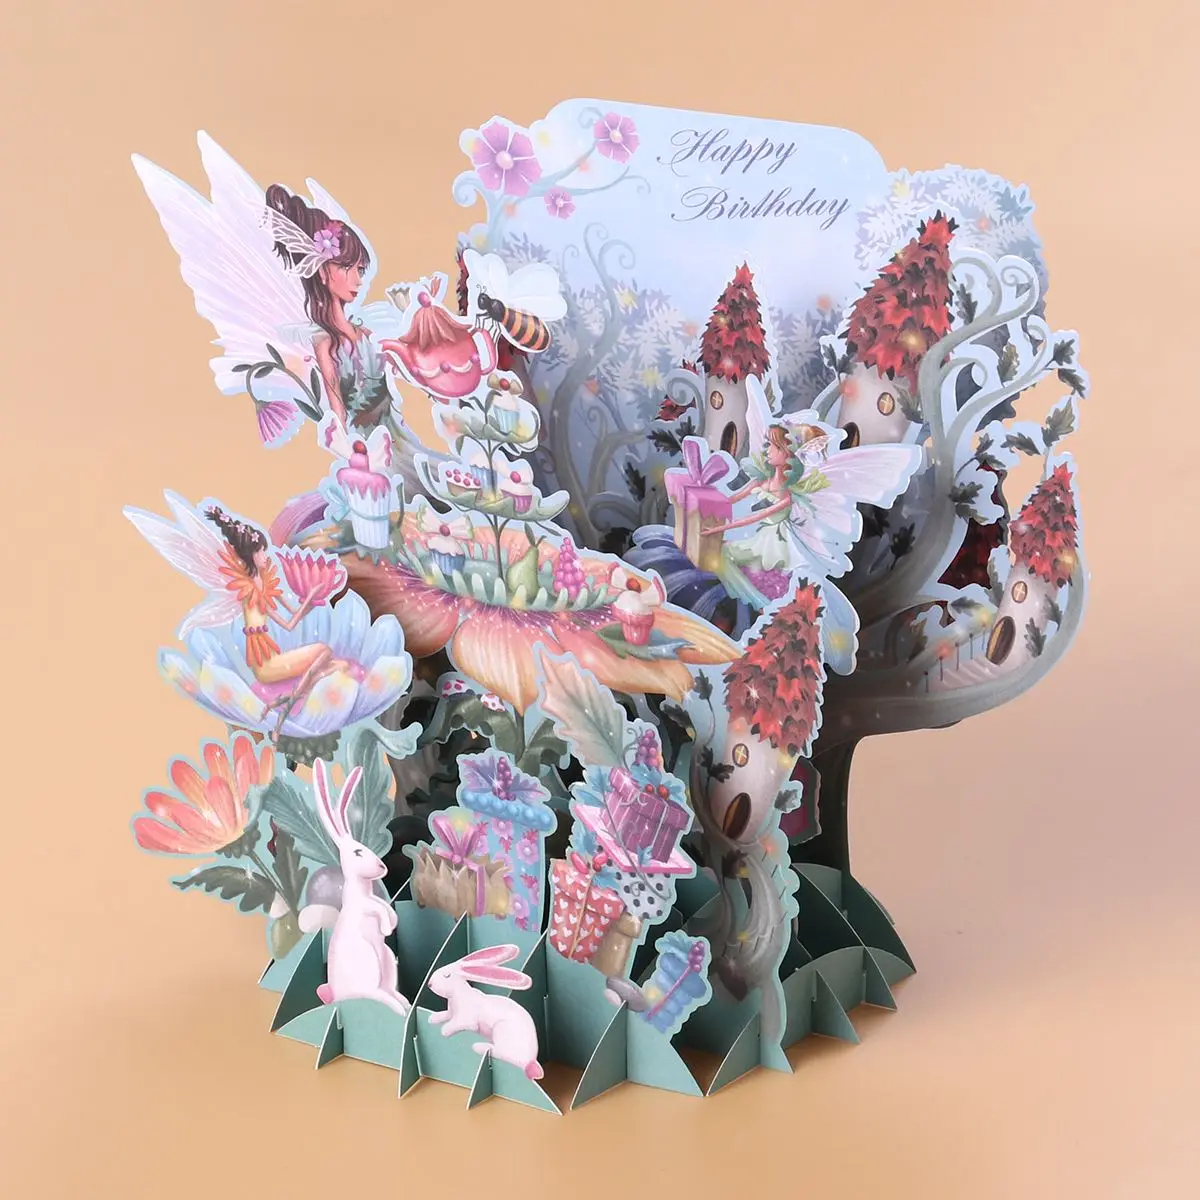 NICEXMAS 3D всплывающие открытки Красивые нежные бумажные открытки на день рождения поздравительные открытки Подарочные открытки на Рождество юбилей